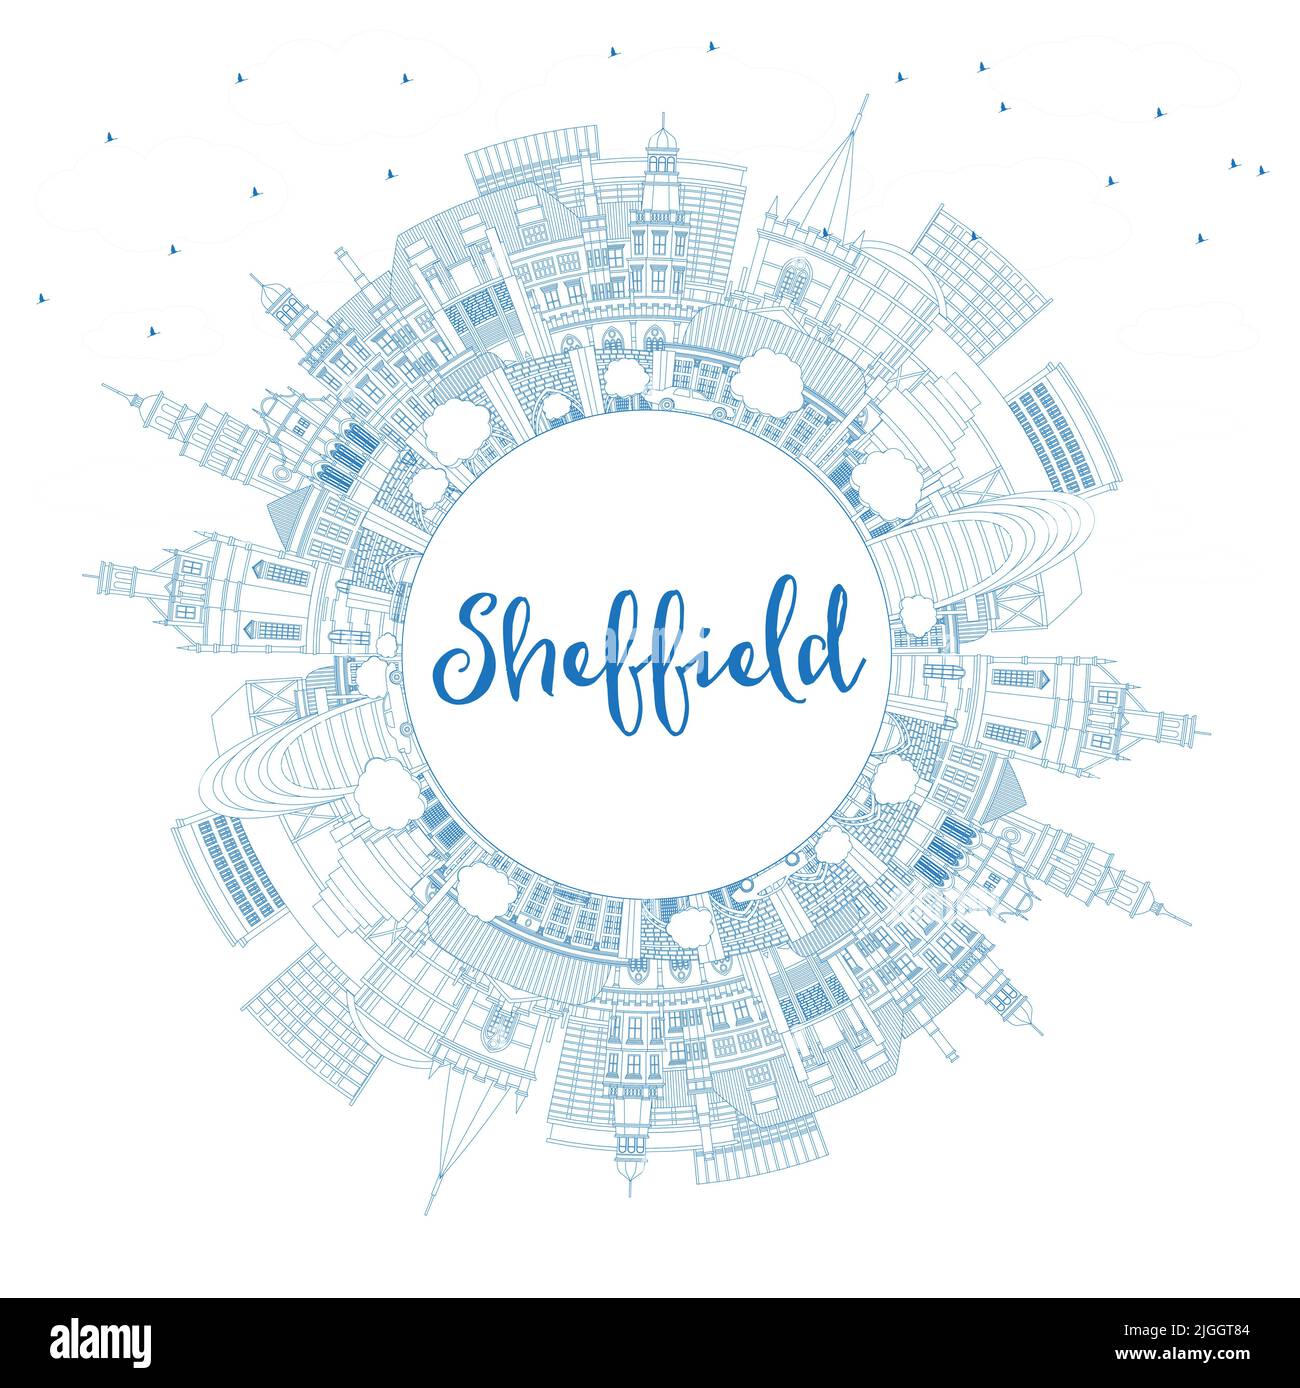 Skizzieren Sie die Skyline von Sheffield UK City mit blauen Gebäuden und Kopierfläche. Vektorgrafik. Stadtbild von Sheffield South Yorkshire mit Wahrzeichen. Stock Vektor